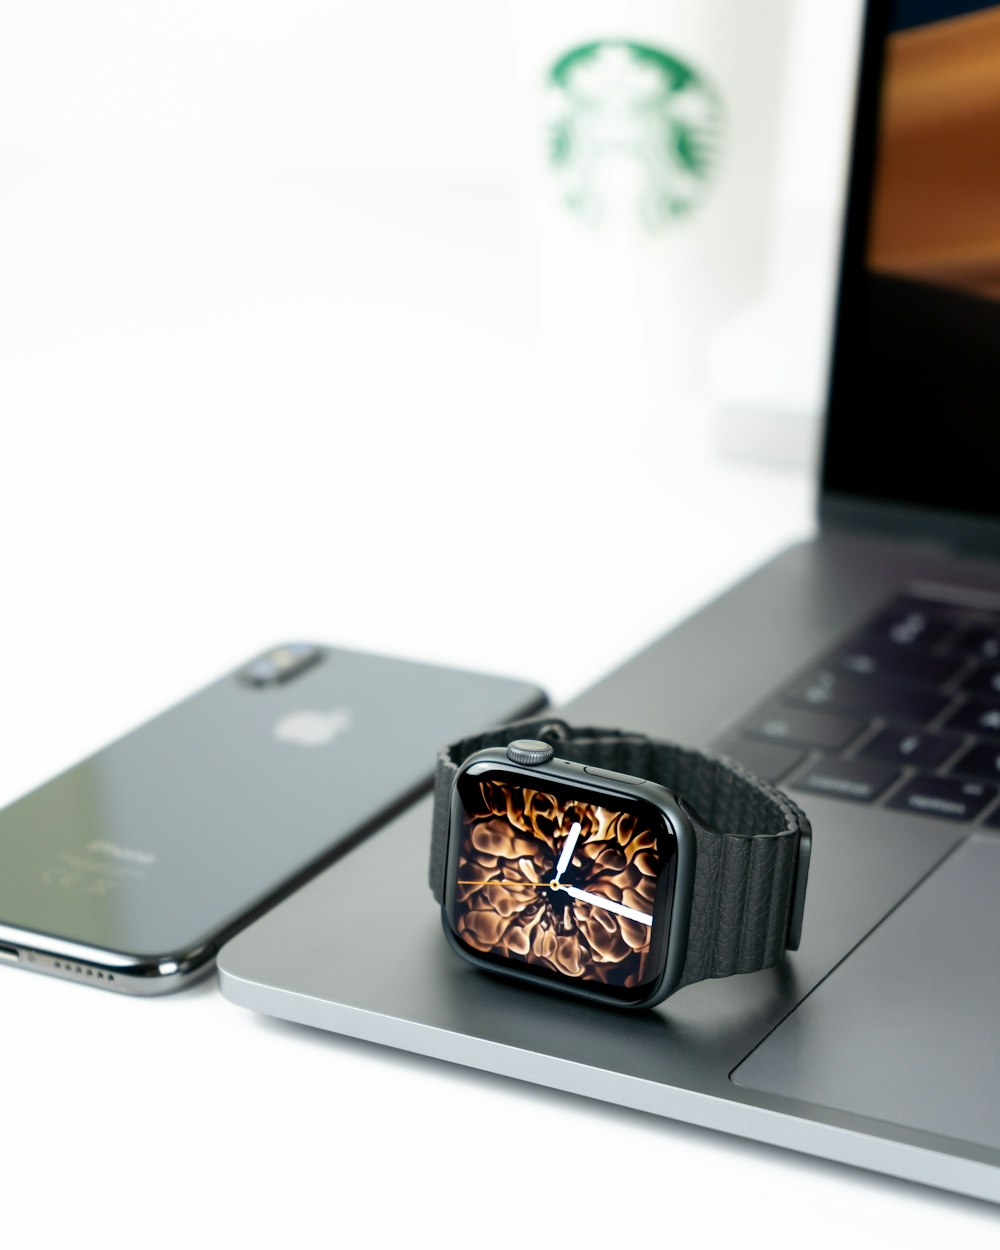 iPhone X 옆에있는 노트북의 Apple Watch